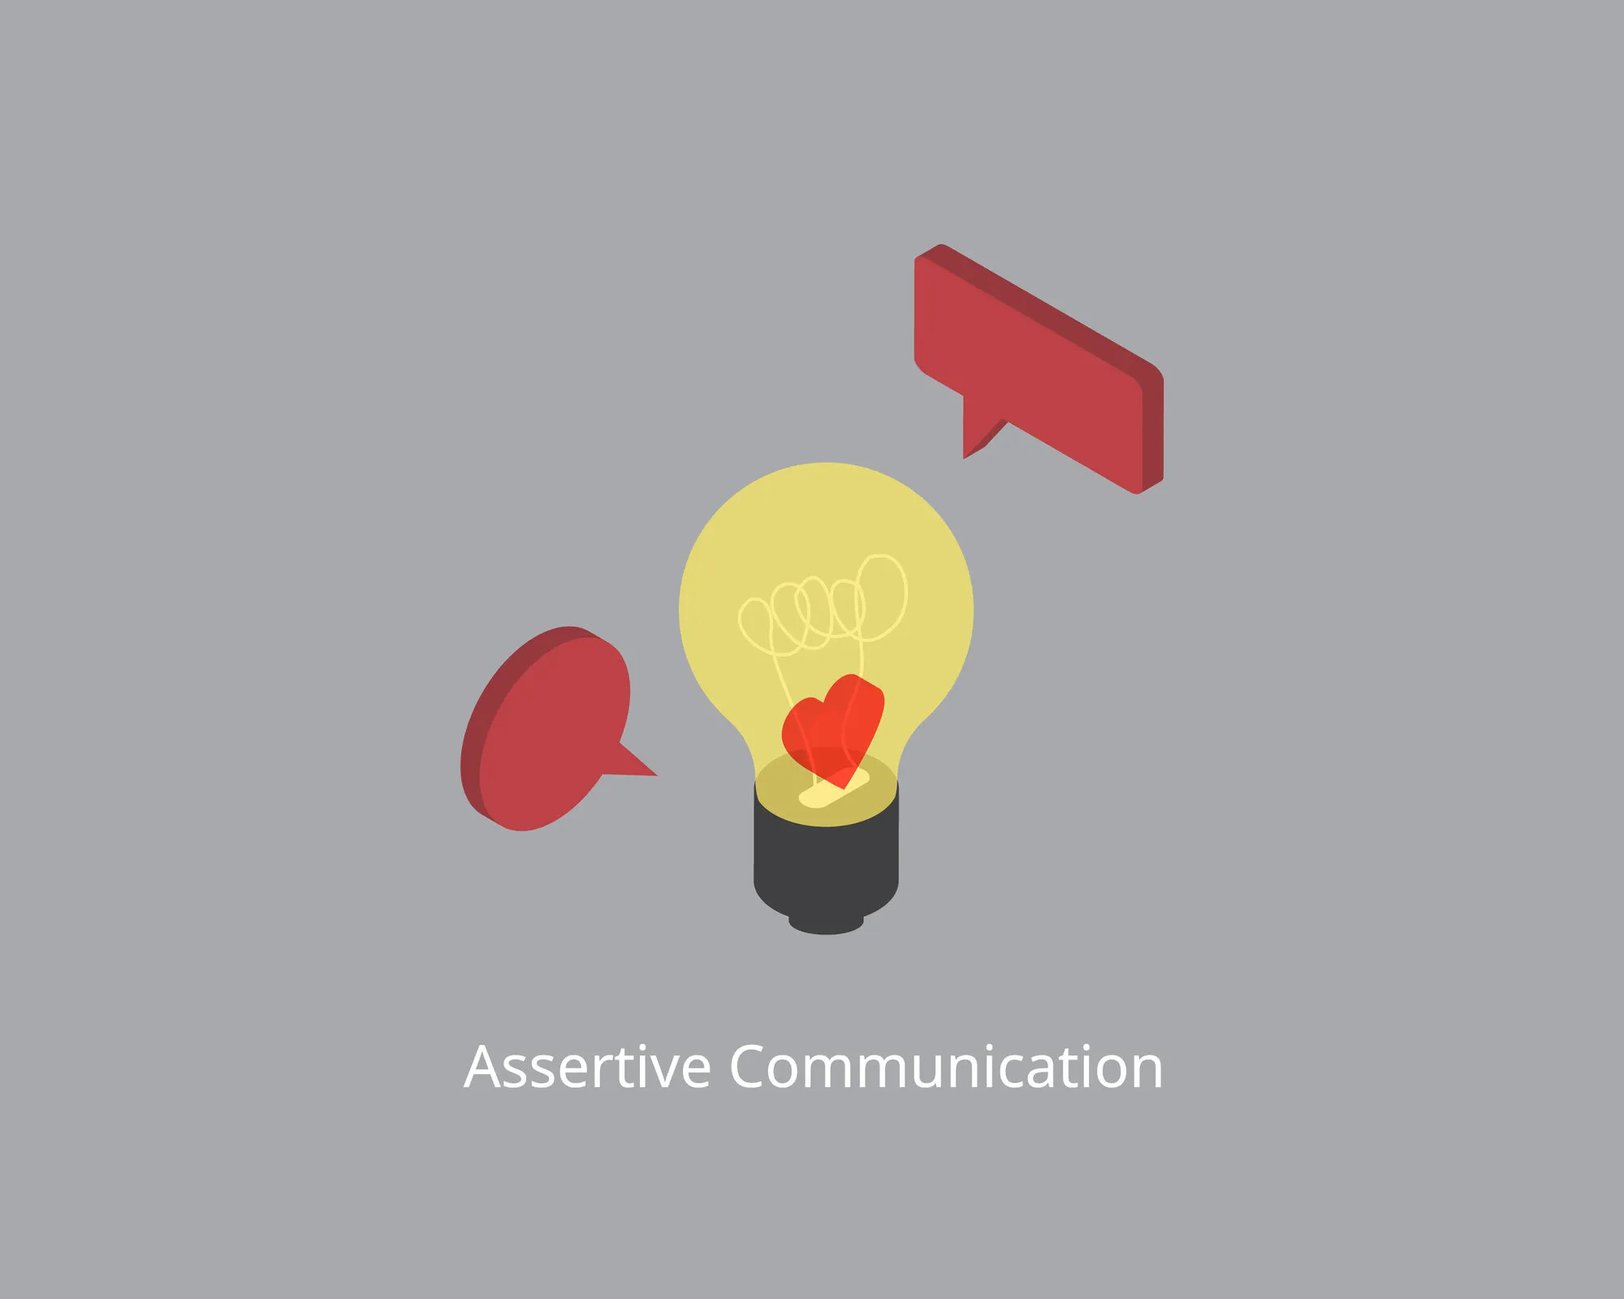 アサーティブコミュニケーションとは？社内を活性化させる方法とは